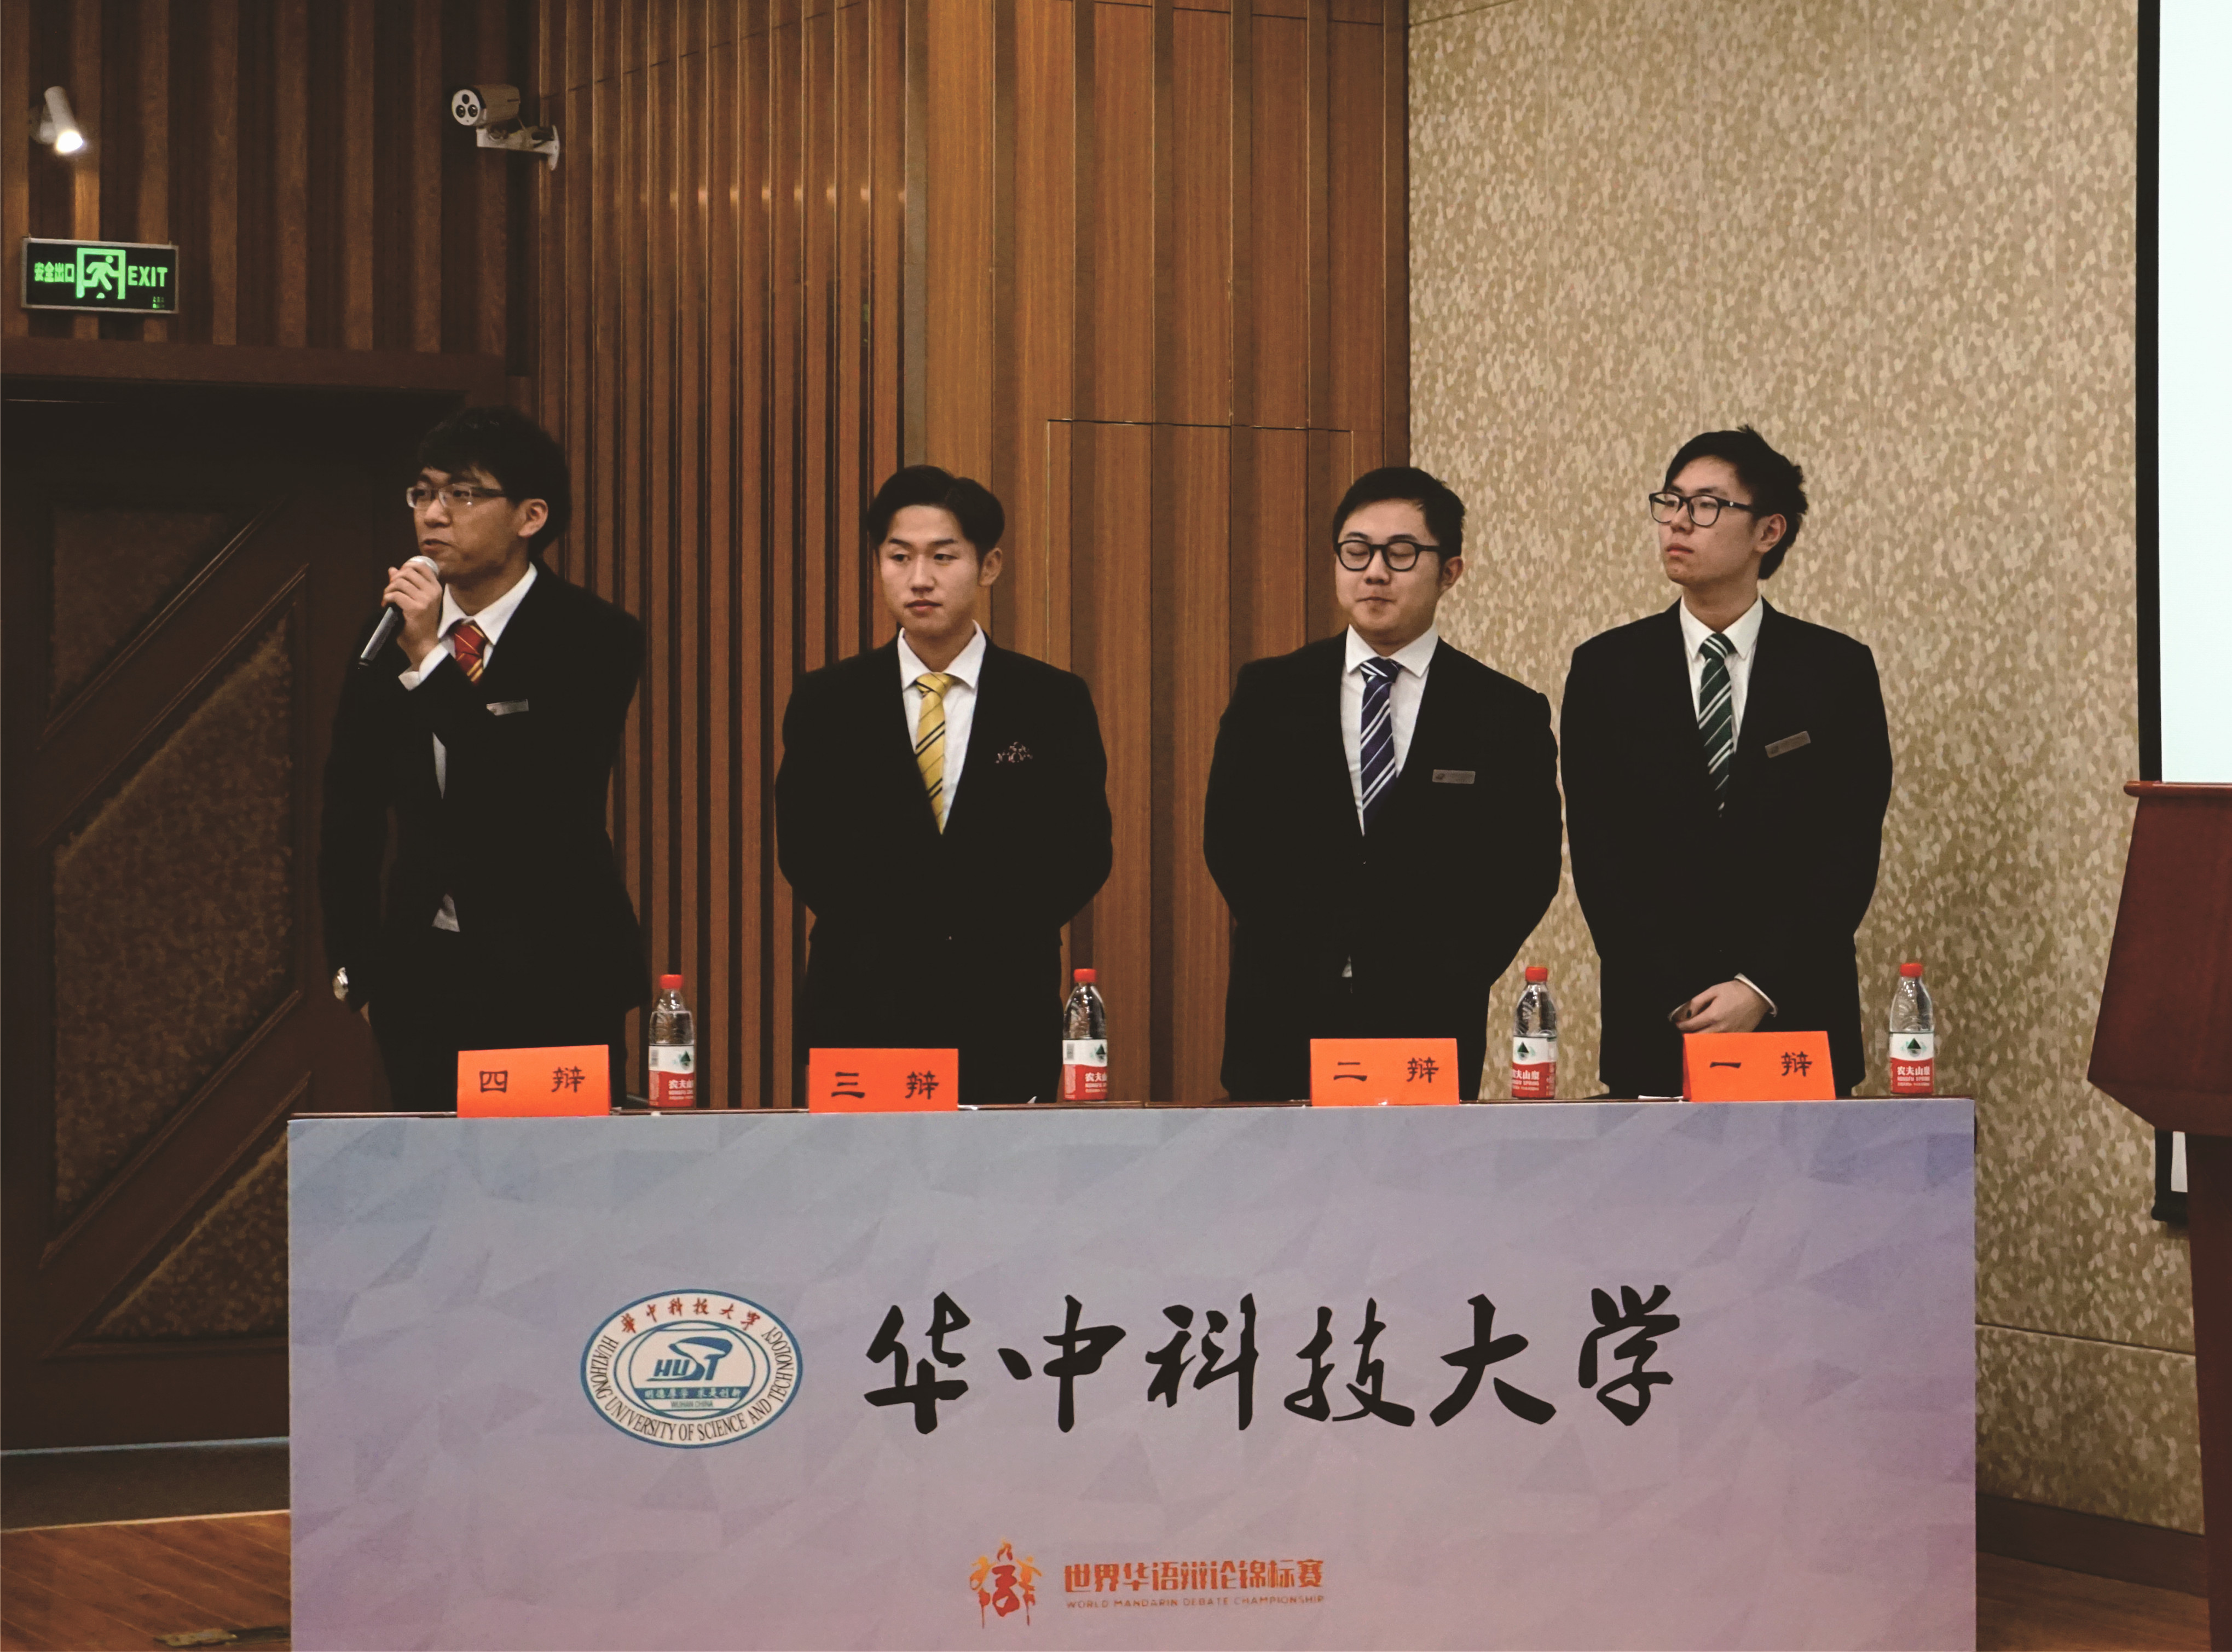 我校辩论队获第九届世界华语辩论锦标赛湖北赛区冠军